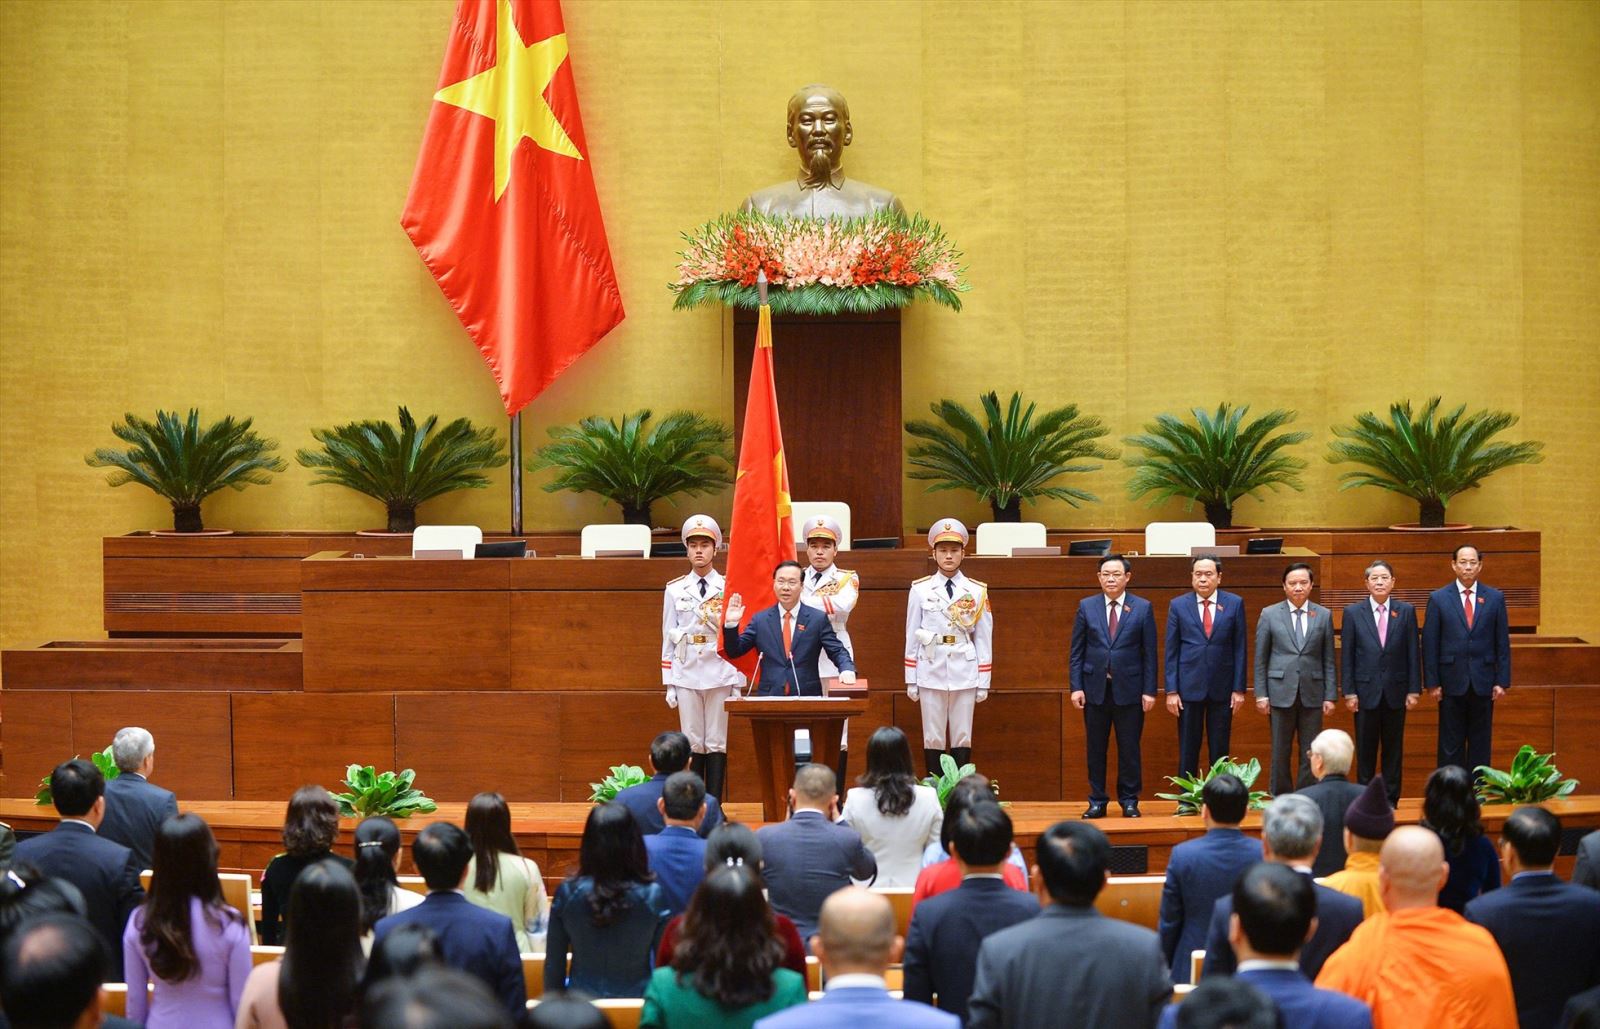 Tân Chủ tịch nước Võ Văn Thưởng tuyên thệ trước Quốc hội.